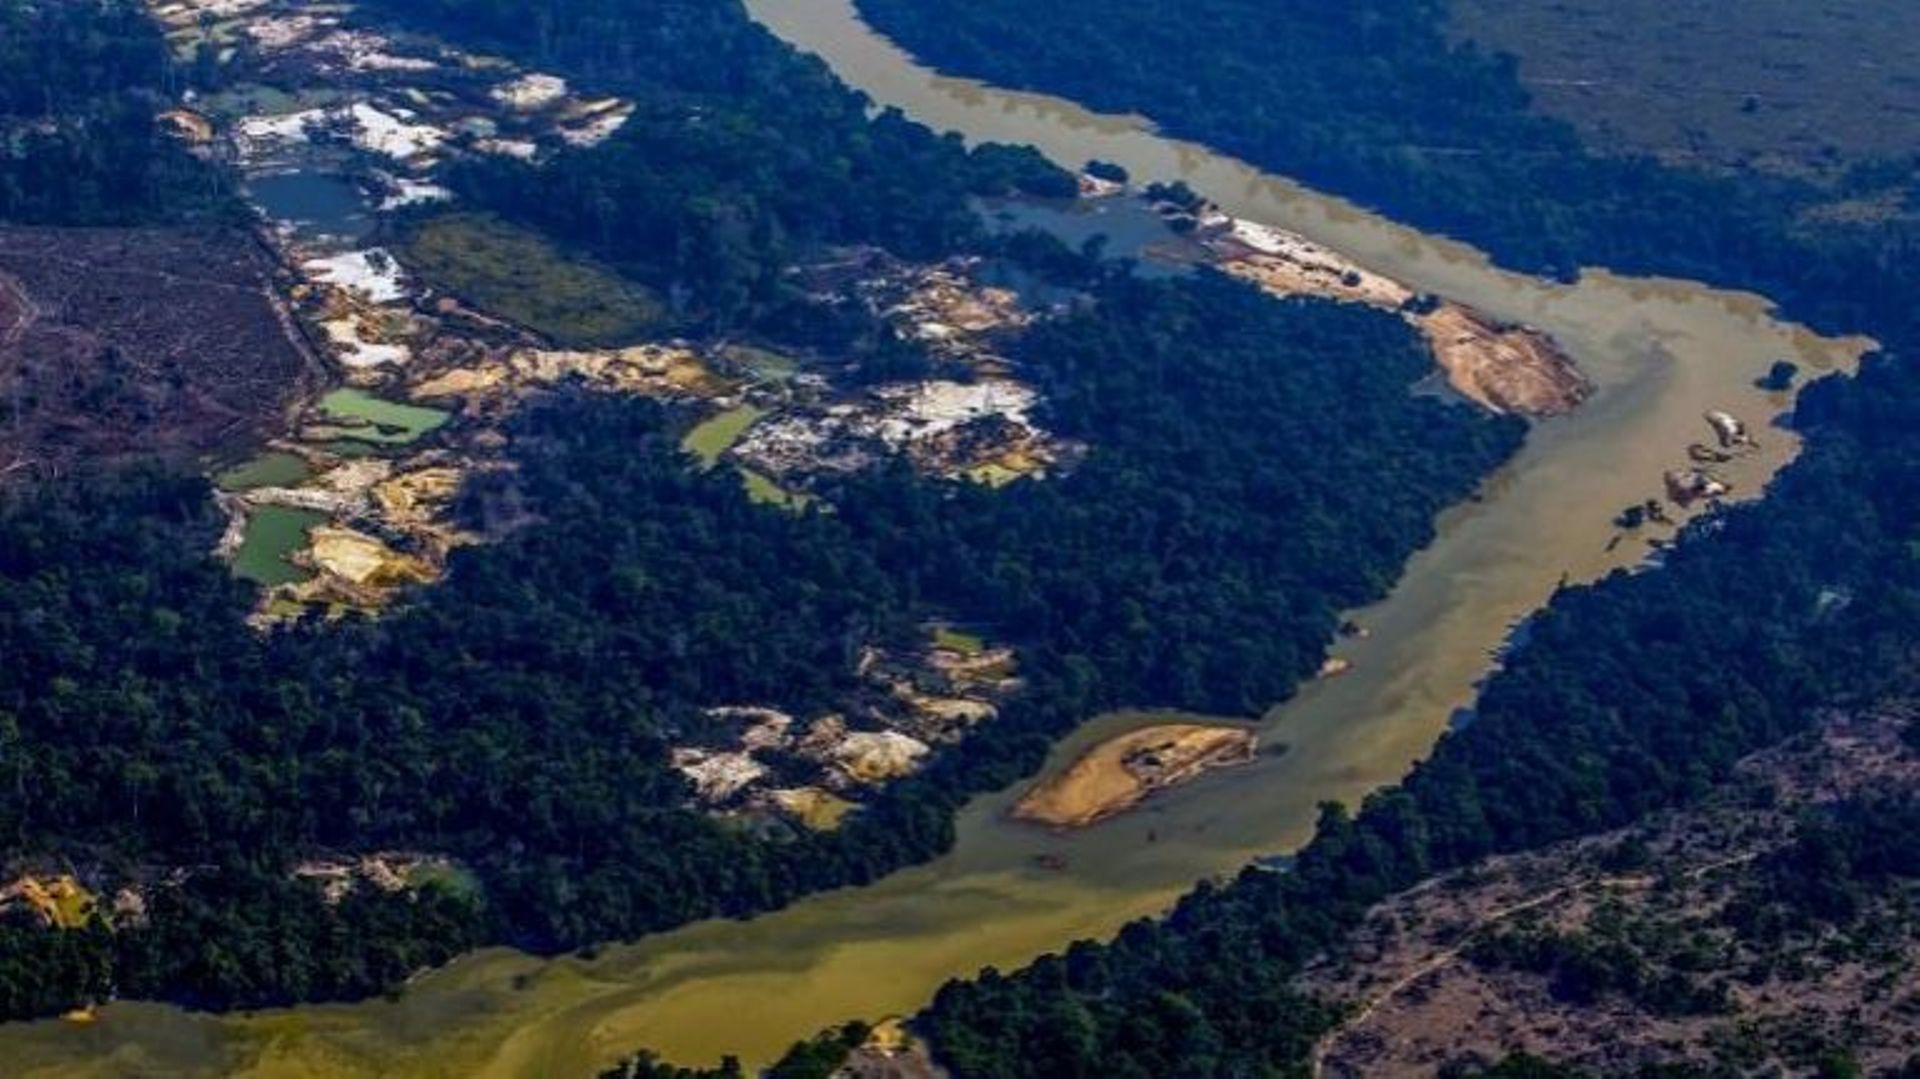 Course au ressources naturelles: ici, une mine illégale d'or en Amazonie